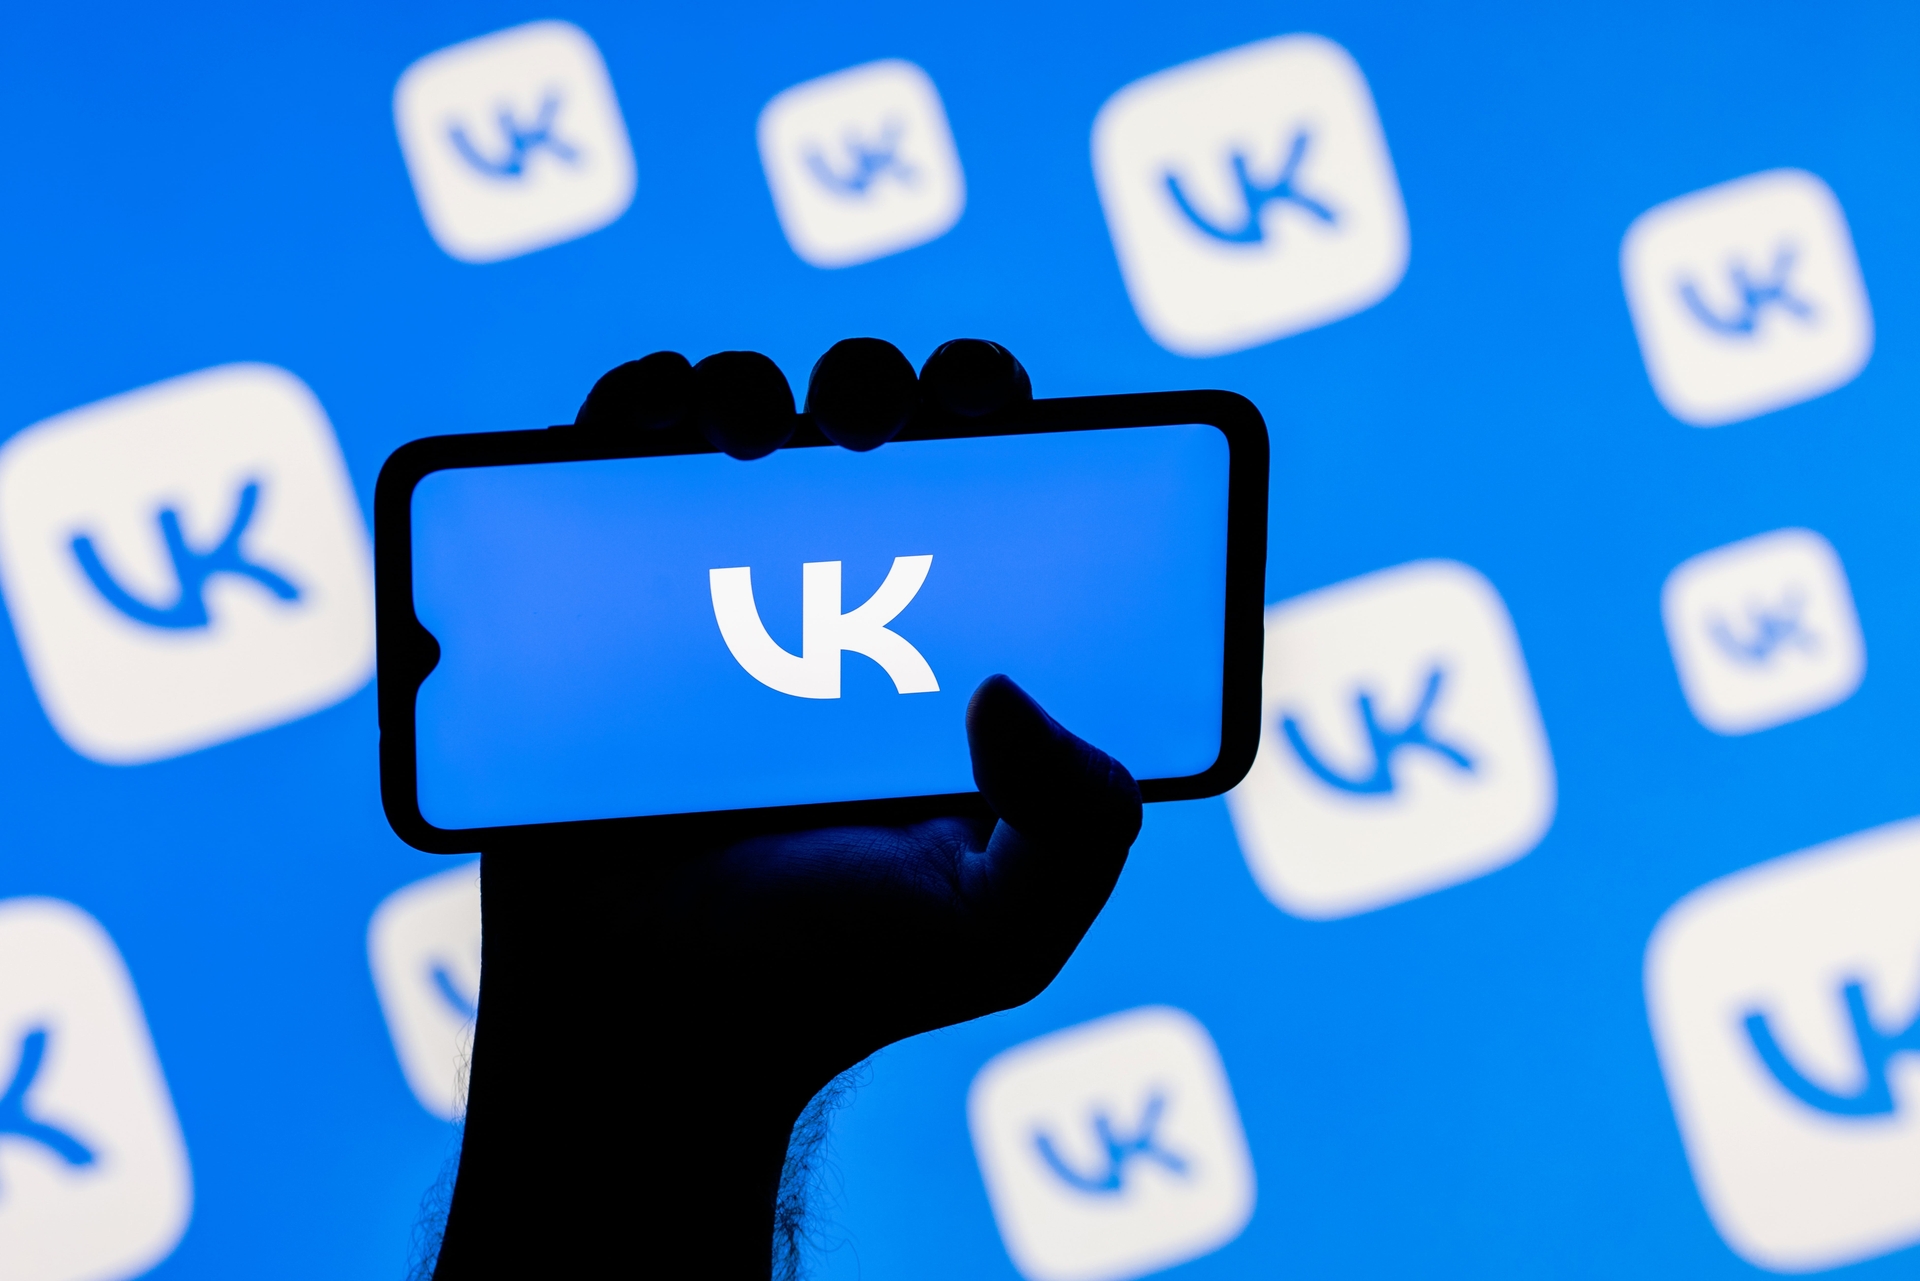 В этой статье мы расскажем, что такое RuStore, магазин приложений, разработанный ВКонтакте для замены западных альтернатив, таких как Google Play Store и App Store.